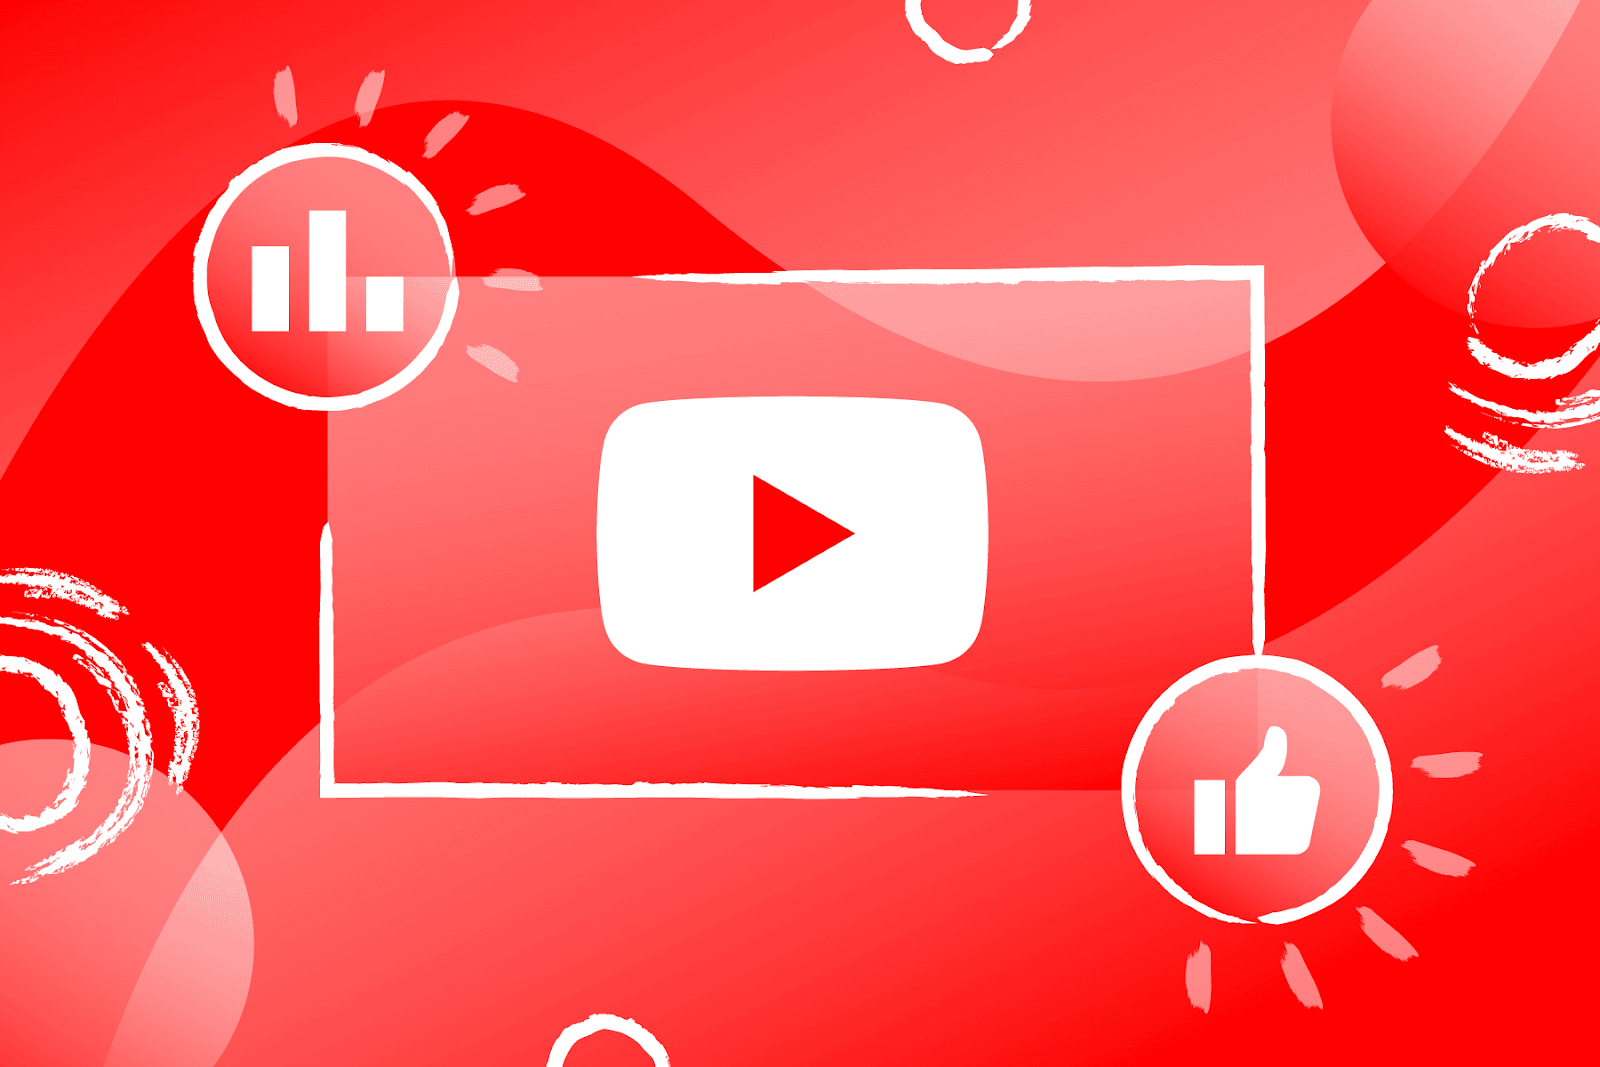 Một cách đơn giản, reup youtube là thu thập clip của người xung quanh upload lên kênh mình với mục tiêu là làm ra tiền